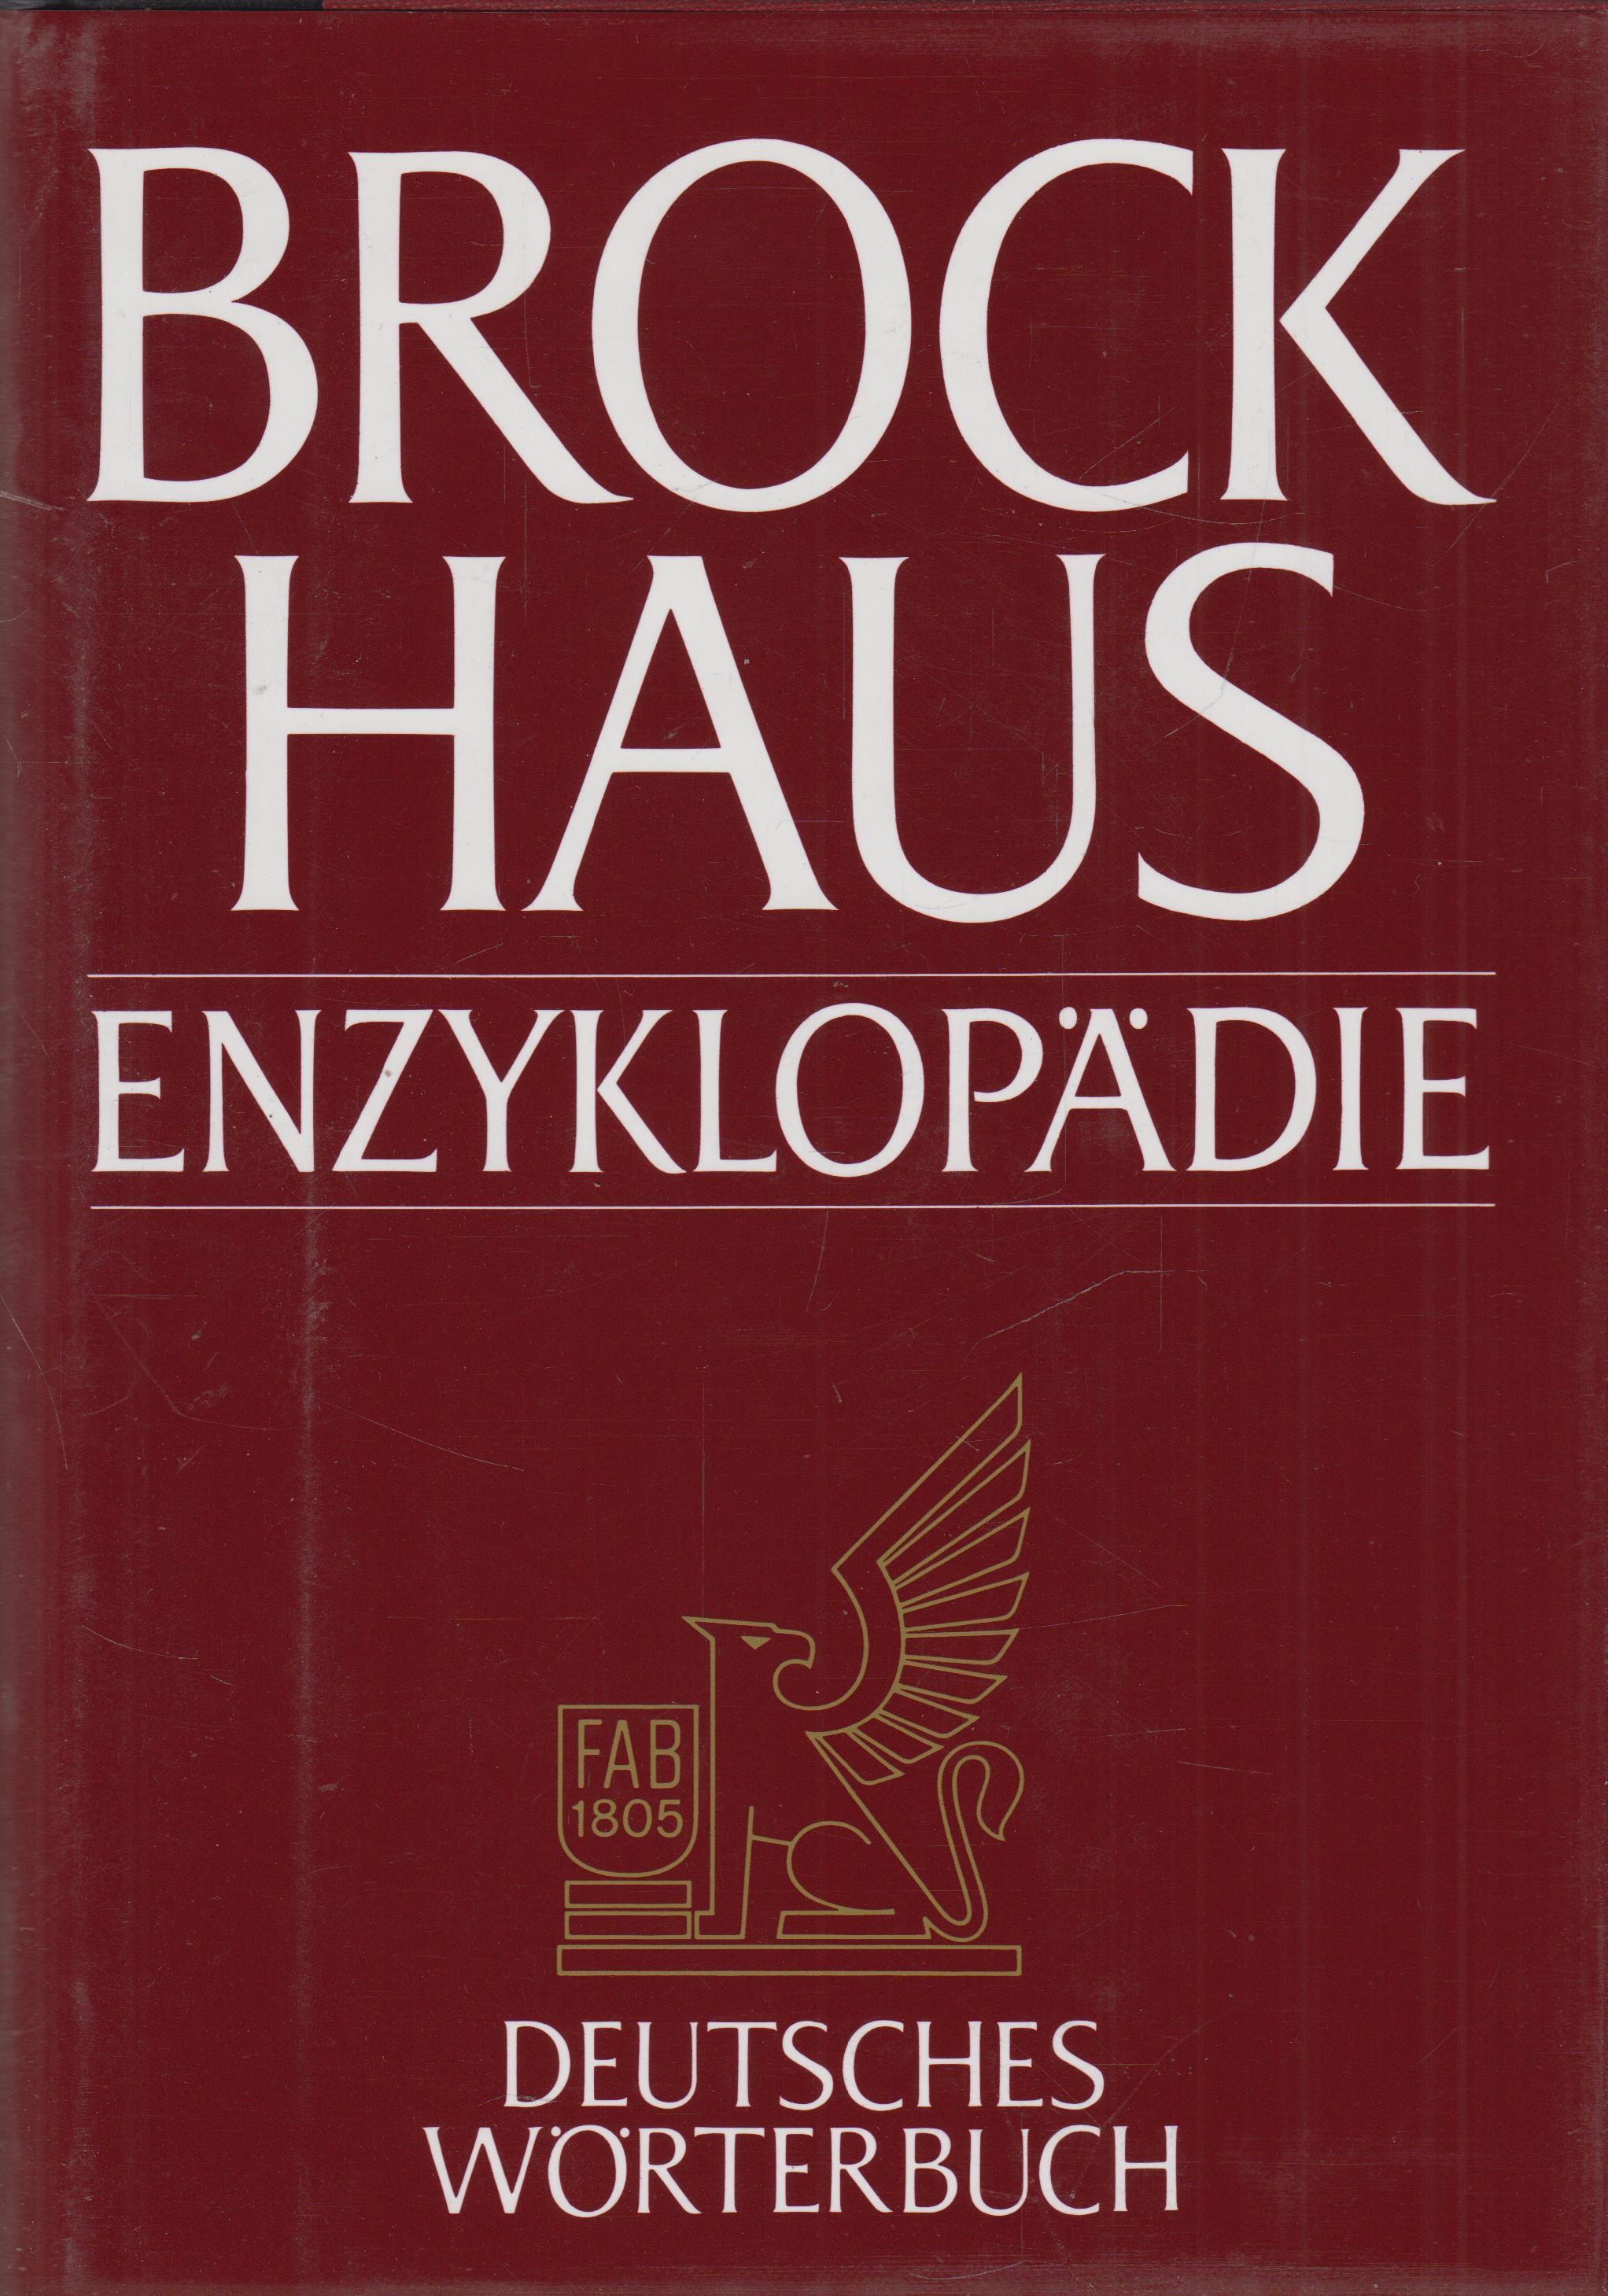 Brockhaus Enzyklopädie Band 27 Deutsches Wörterbuch GLUC-REG - anonym